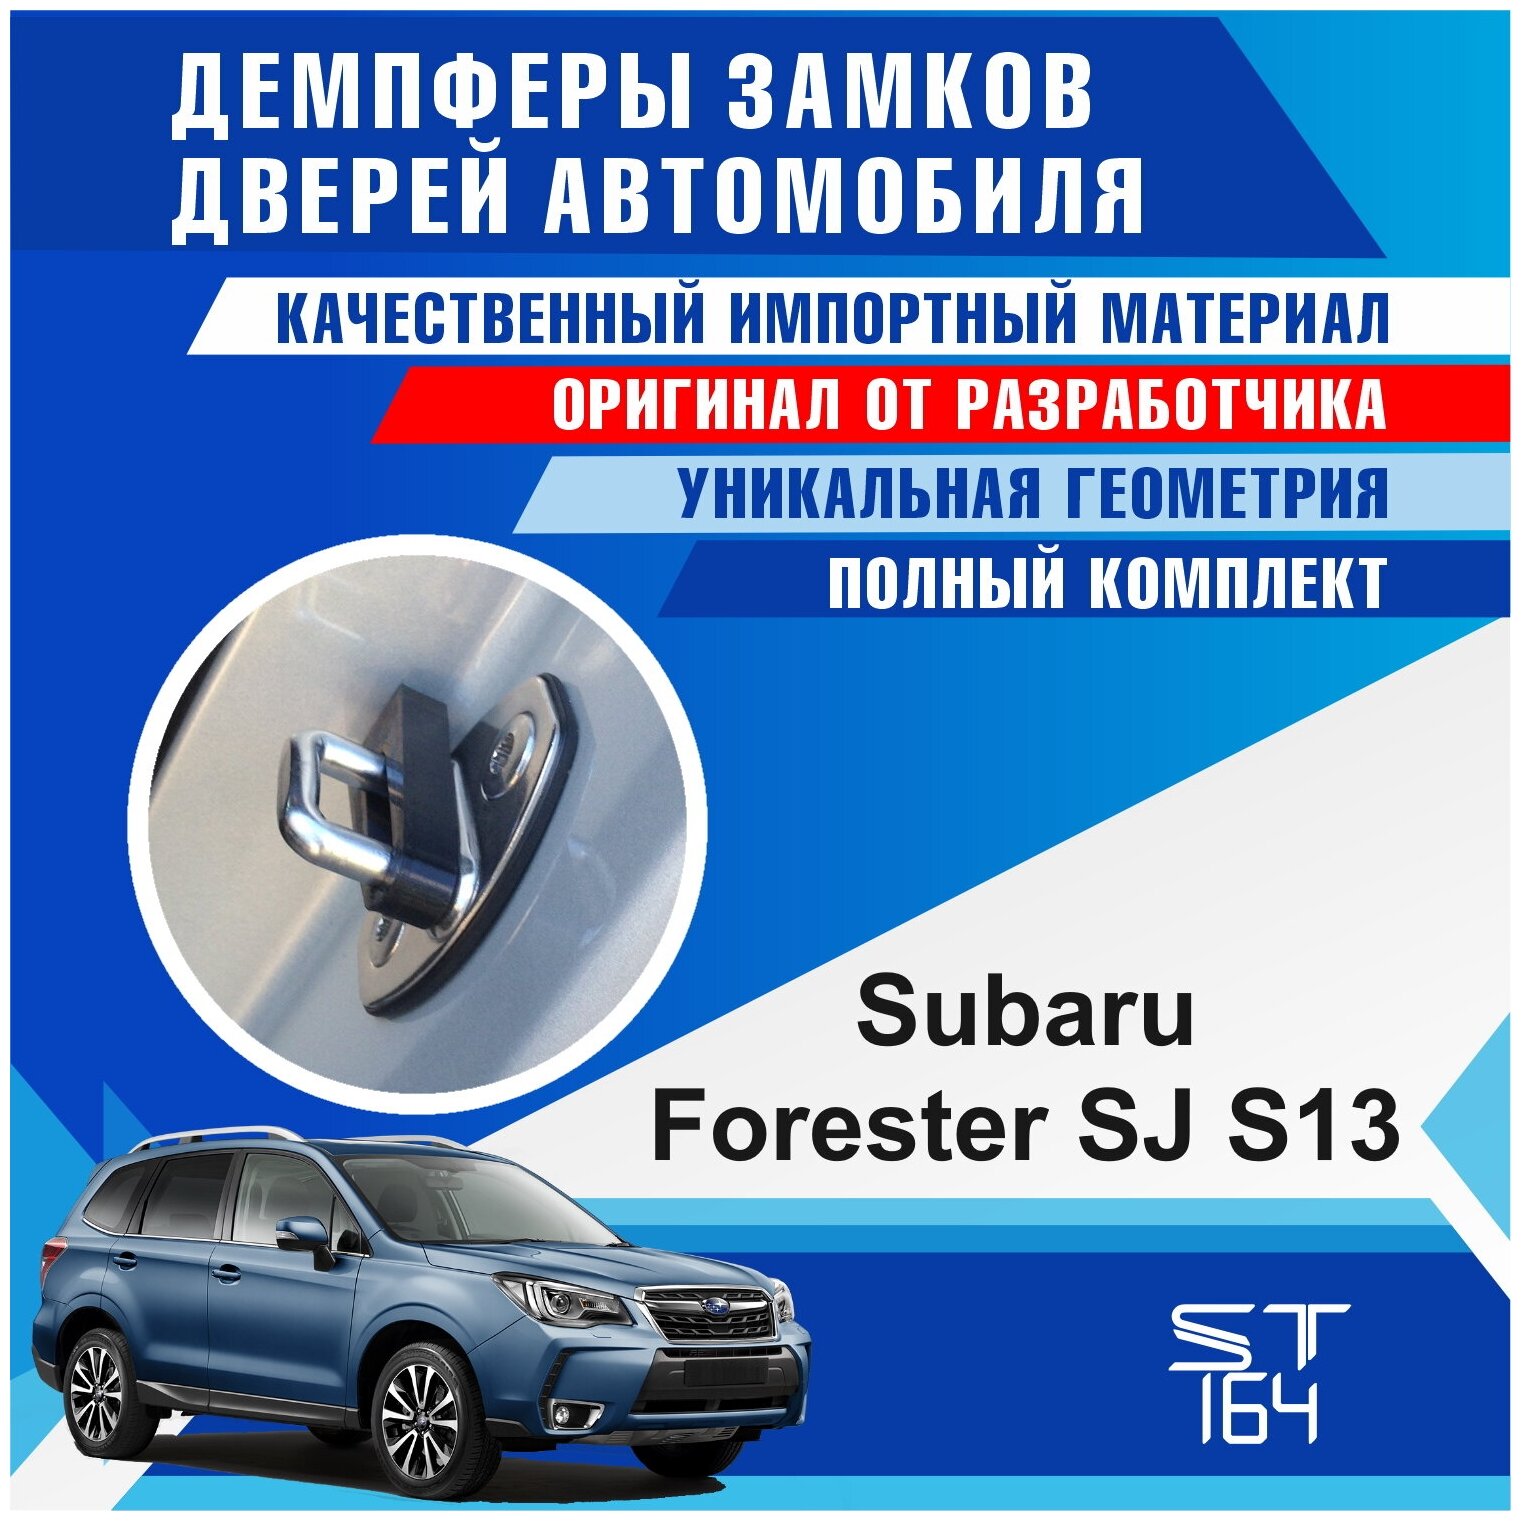 Демпферы замков дверей Субару Форестер SJ S13 ( Subaru Forester SJ S13 ) на 4 двери + смазка